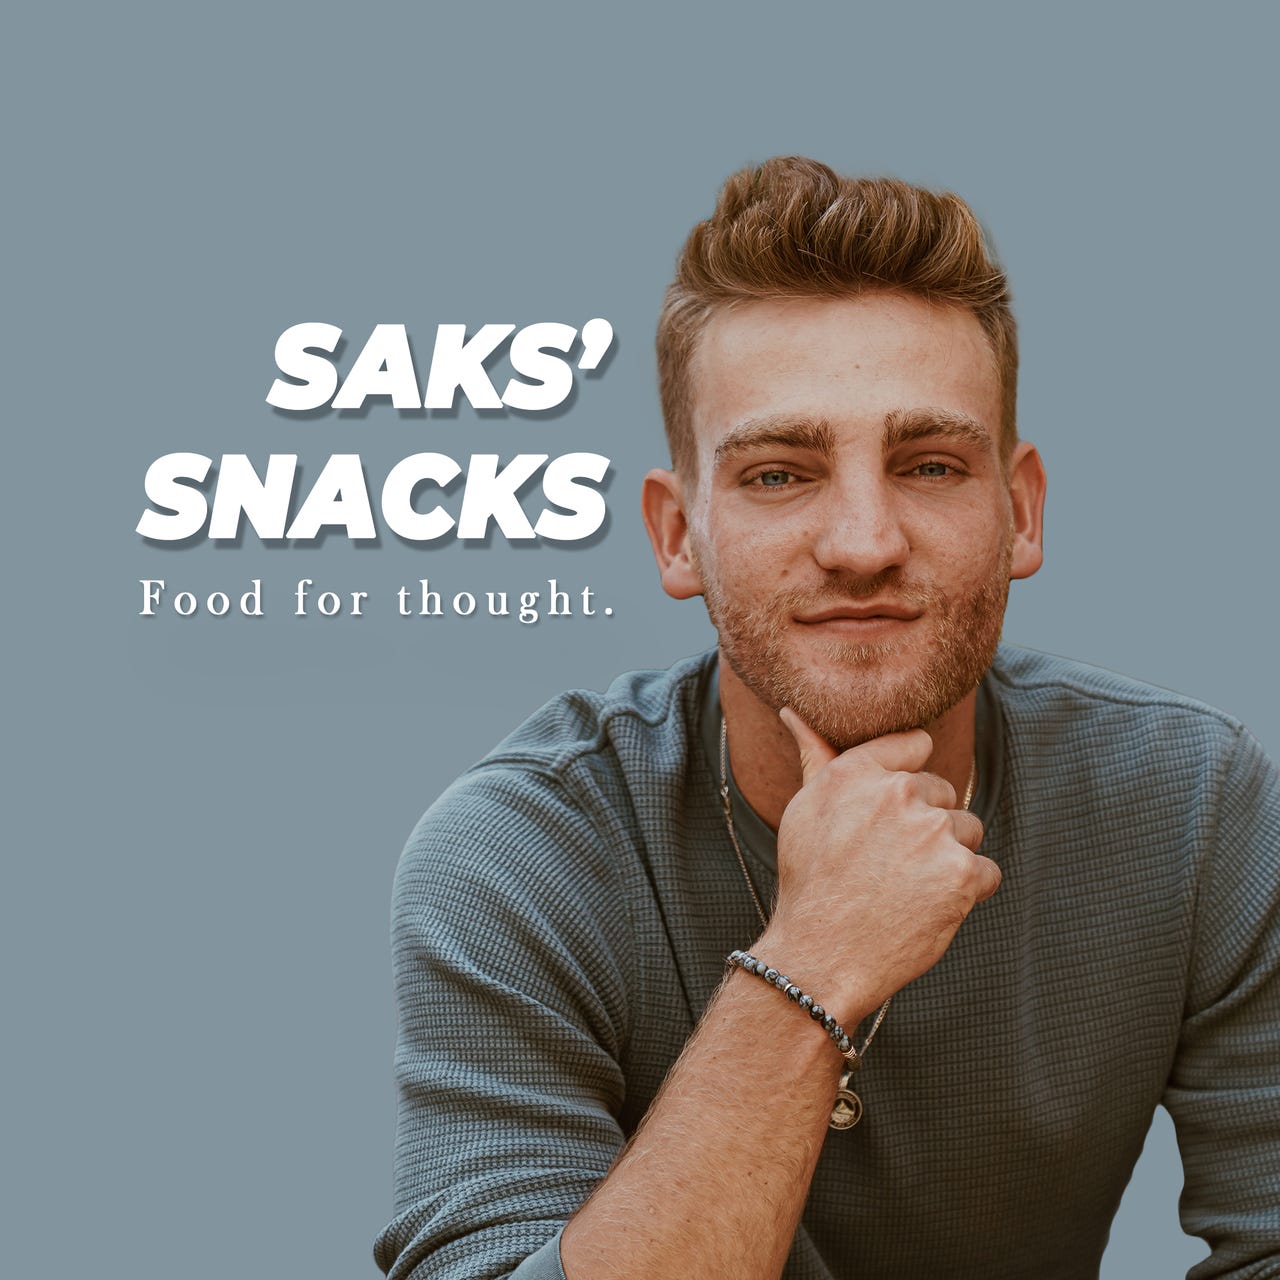 Saks' Snacks